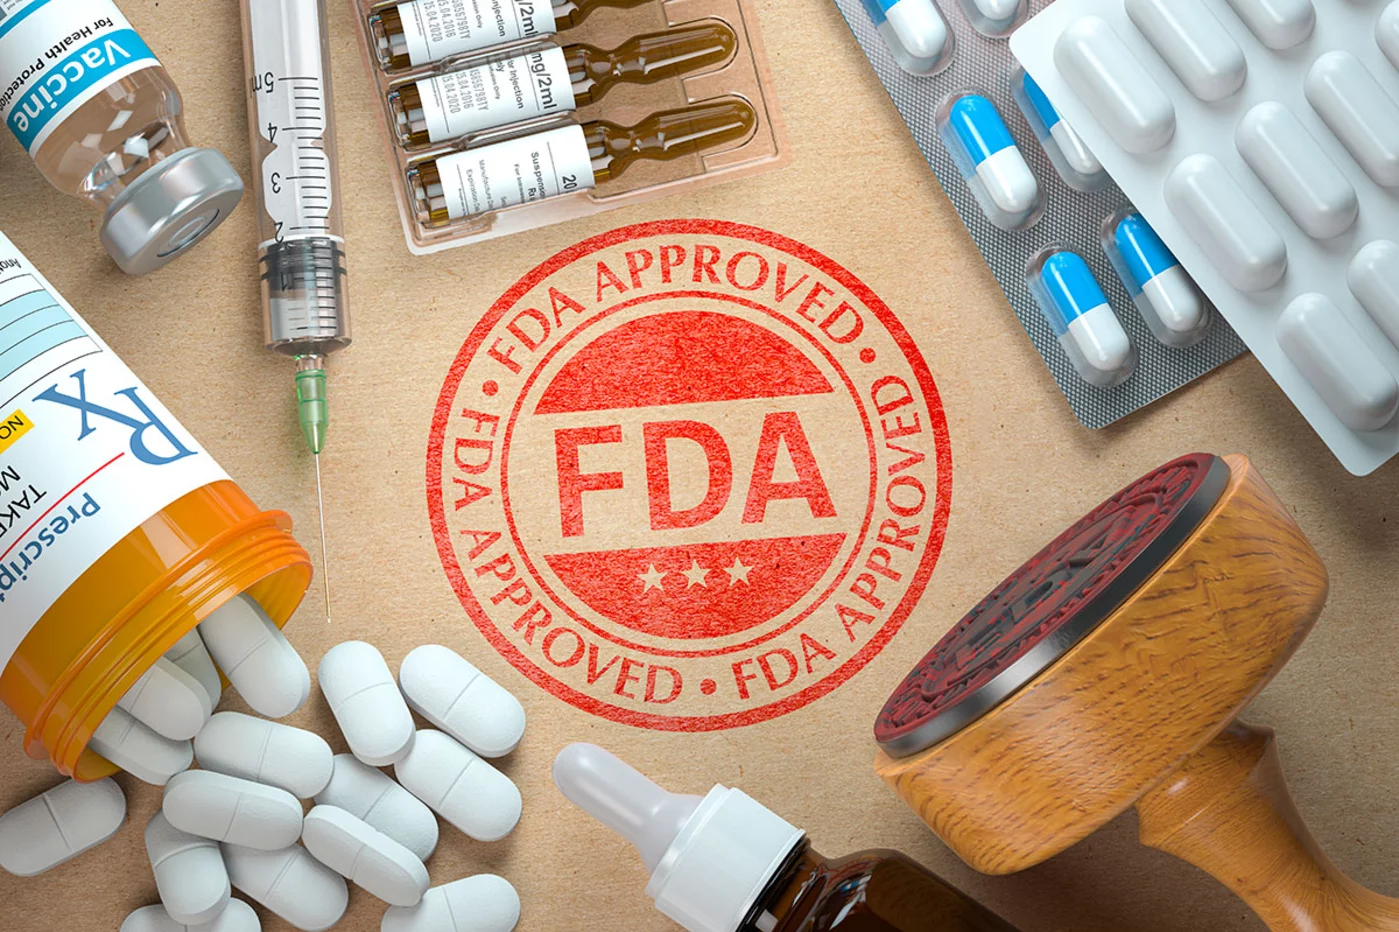 La mifepristona recibió la aprobación de la FDA hace más de 20 años, sin embargo ahora está siendo cuestionada por los grupos antiabortistas del país. FOTO: FDA